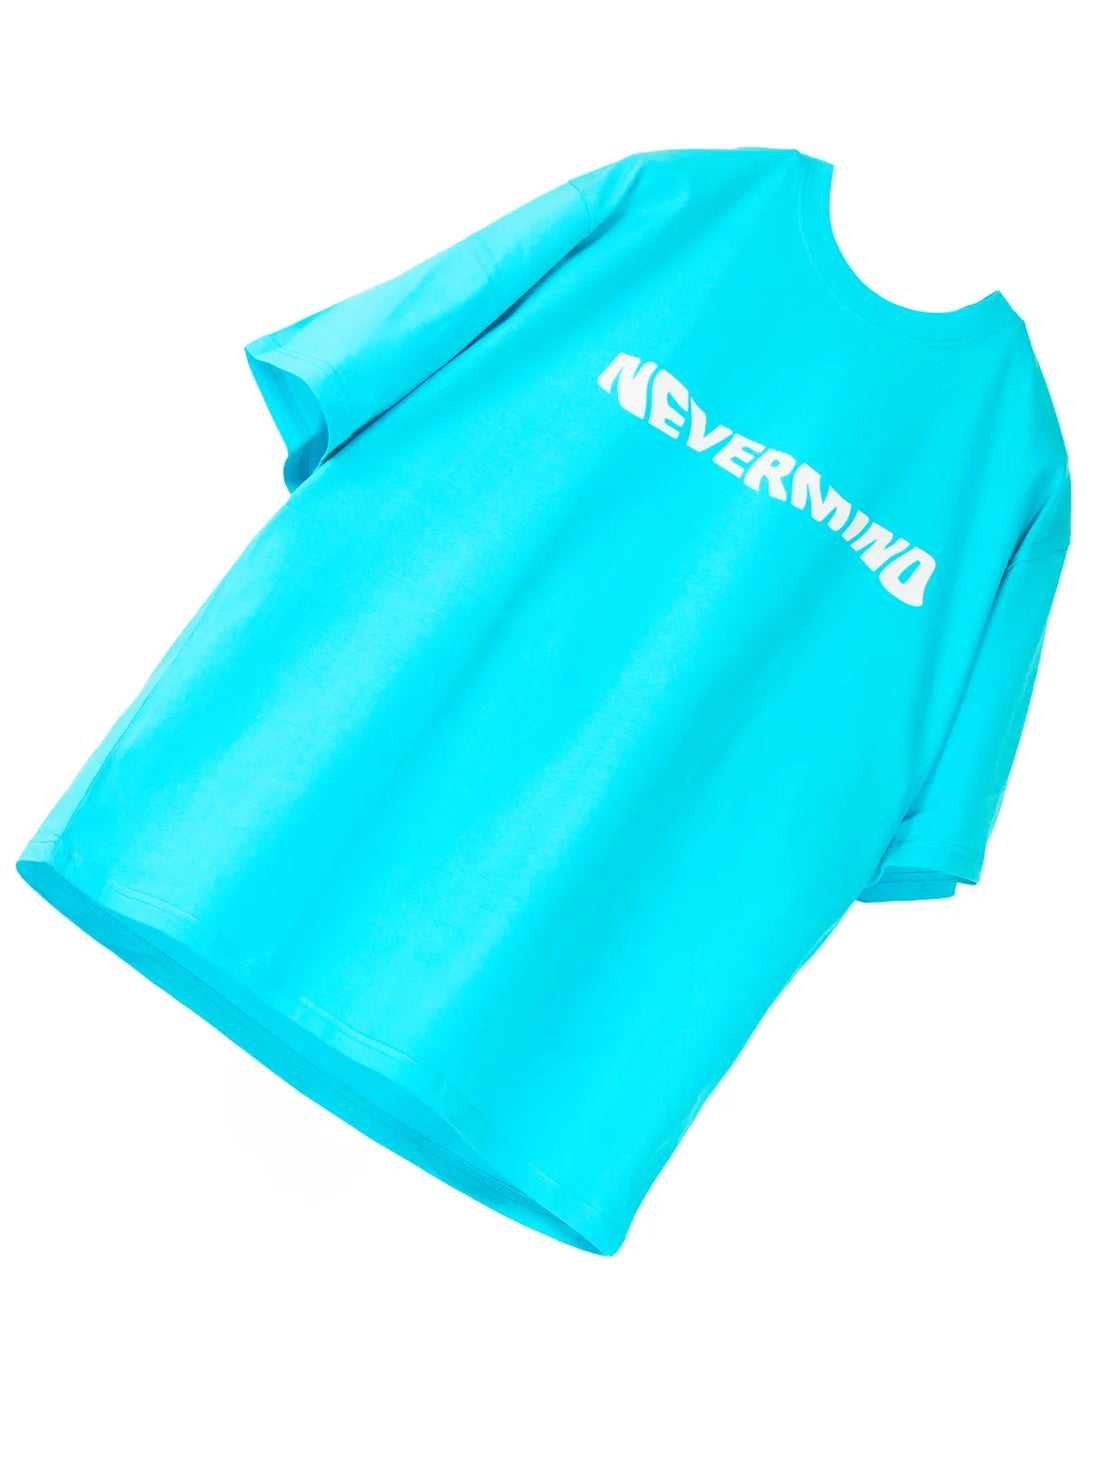 Nevermind Nirvana Oversized T-shirt for Men